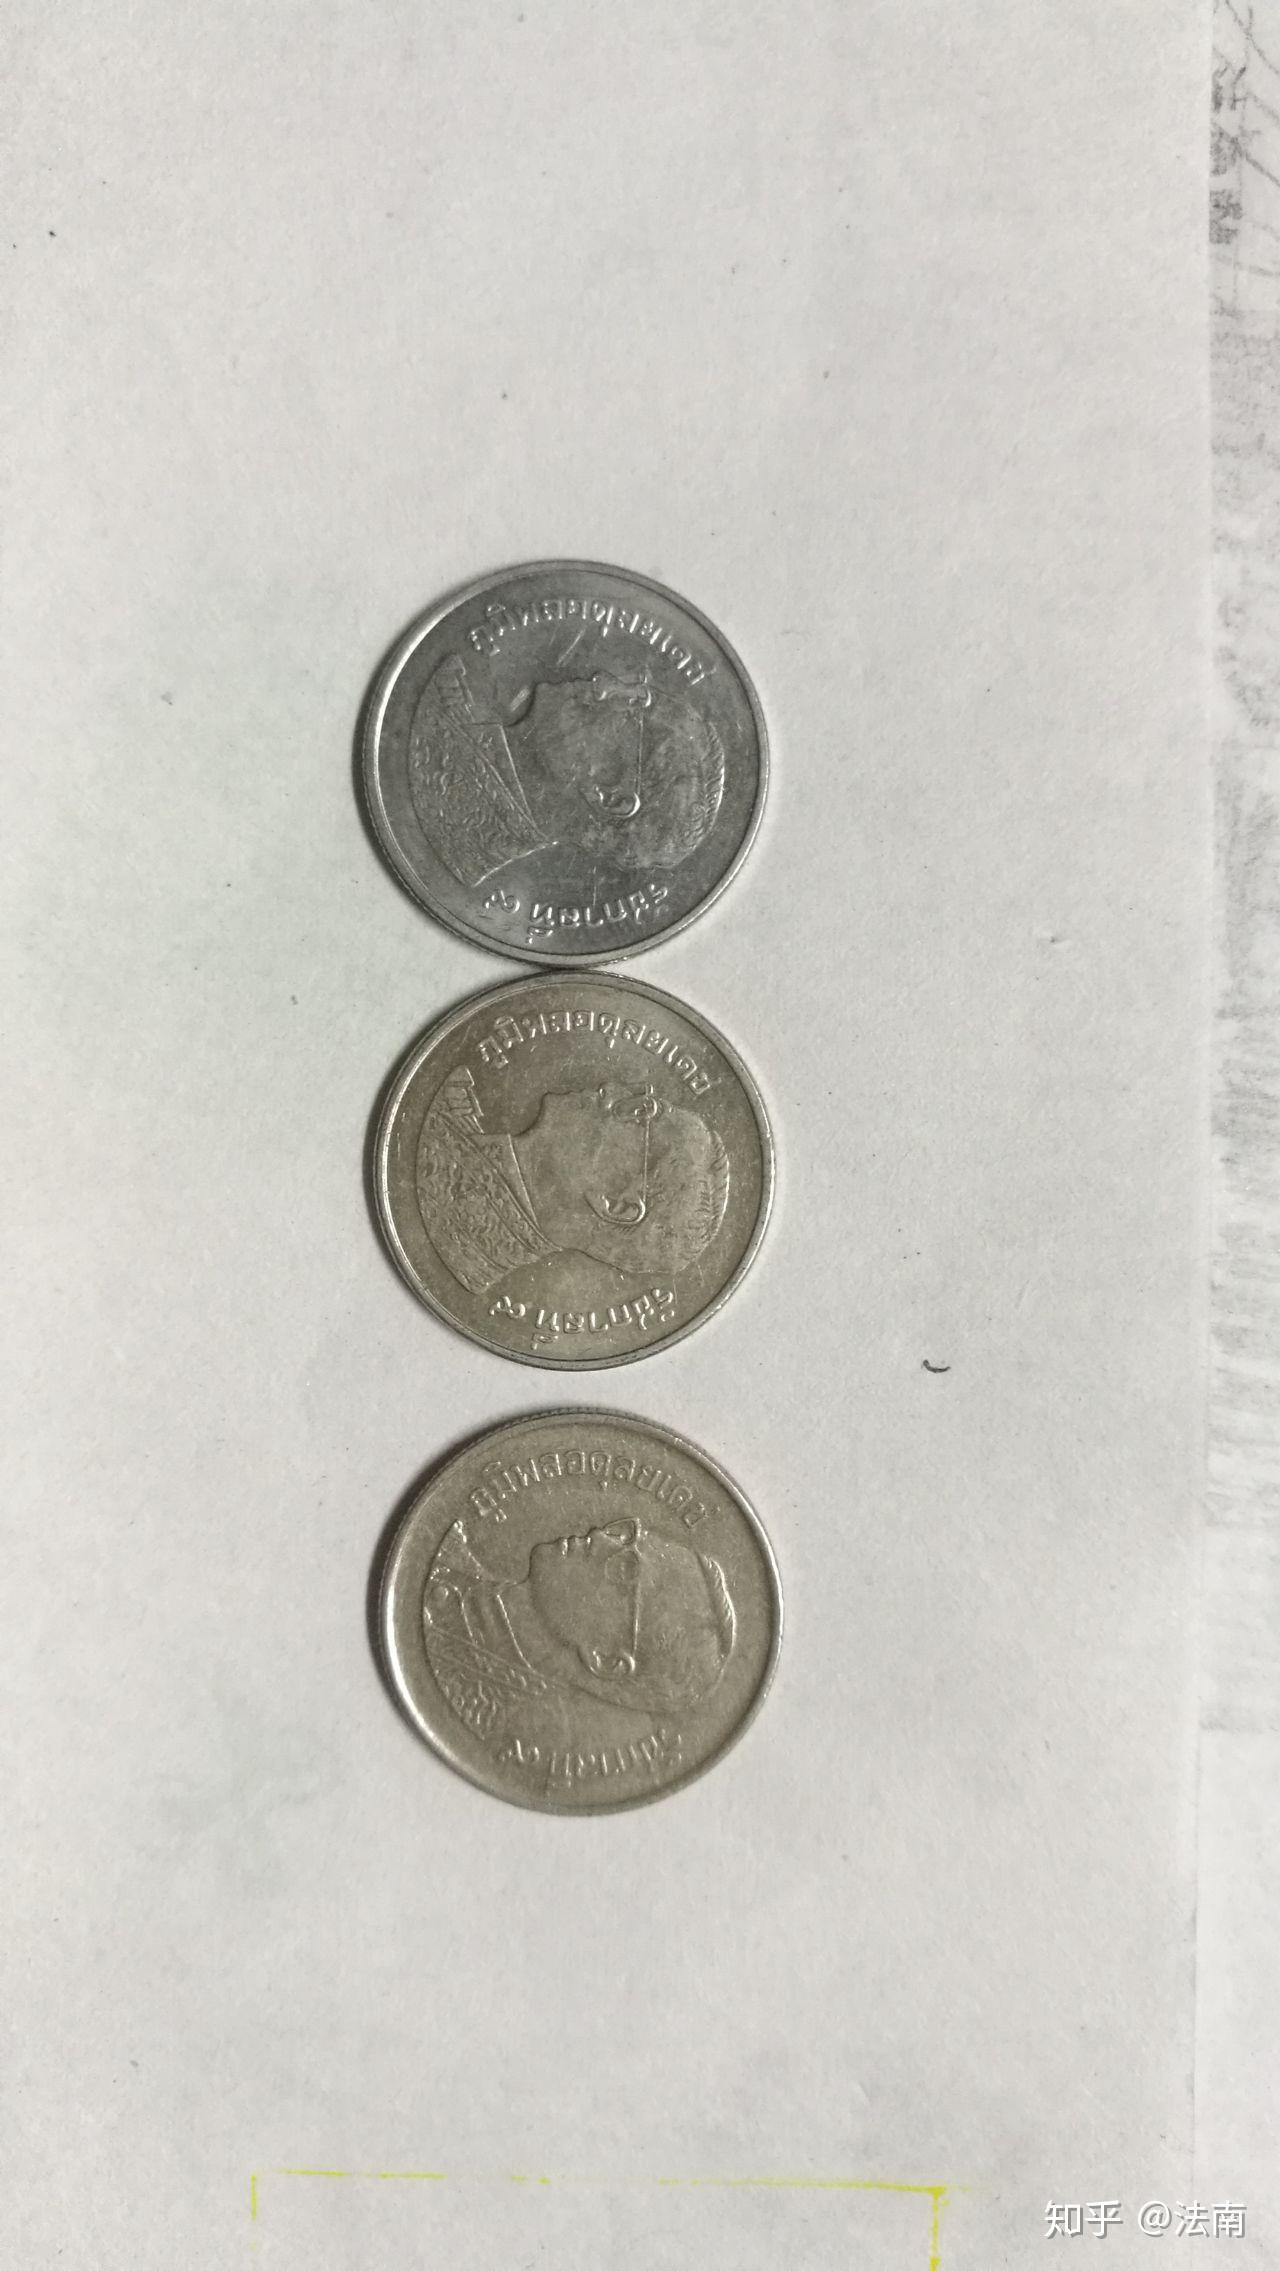 泰国1泰铢硬币-价格:1元-se86843365-外国钱币-零售-7788收藏__收藏热线